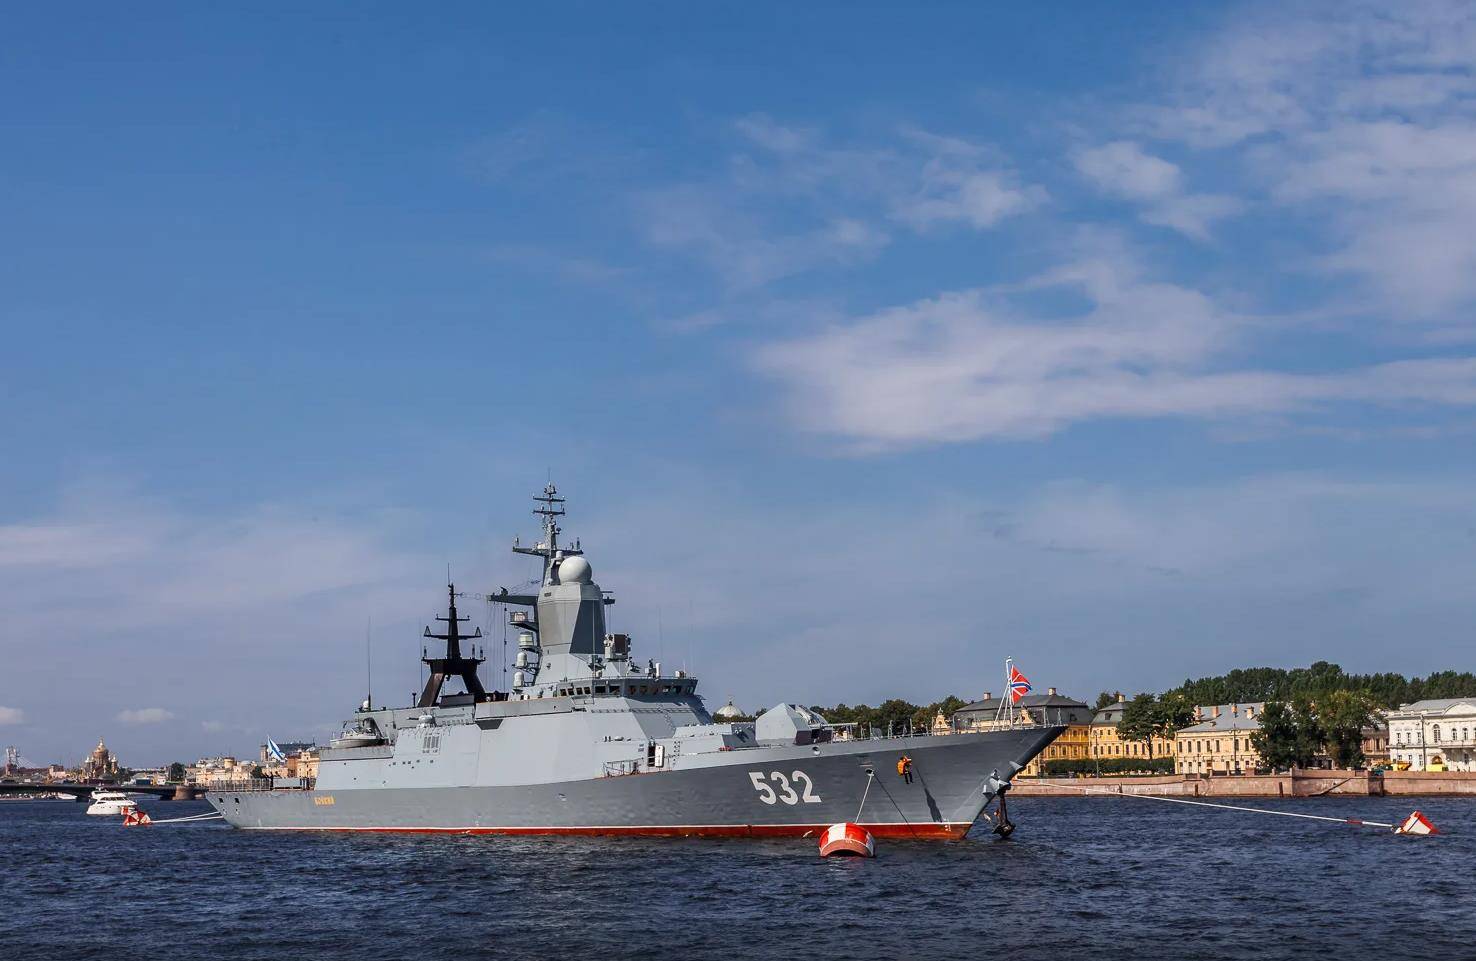 同前苏联战舰设计特征相比,俄海军20380型护卫舰有所区别,不仅拥有